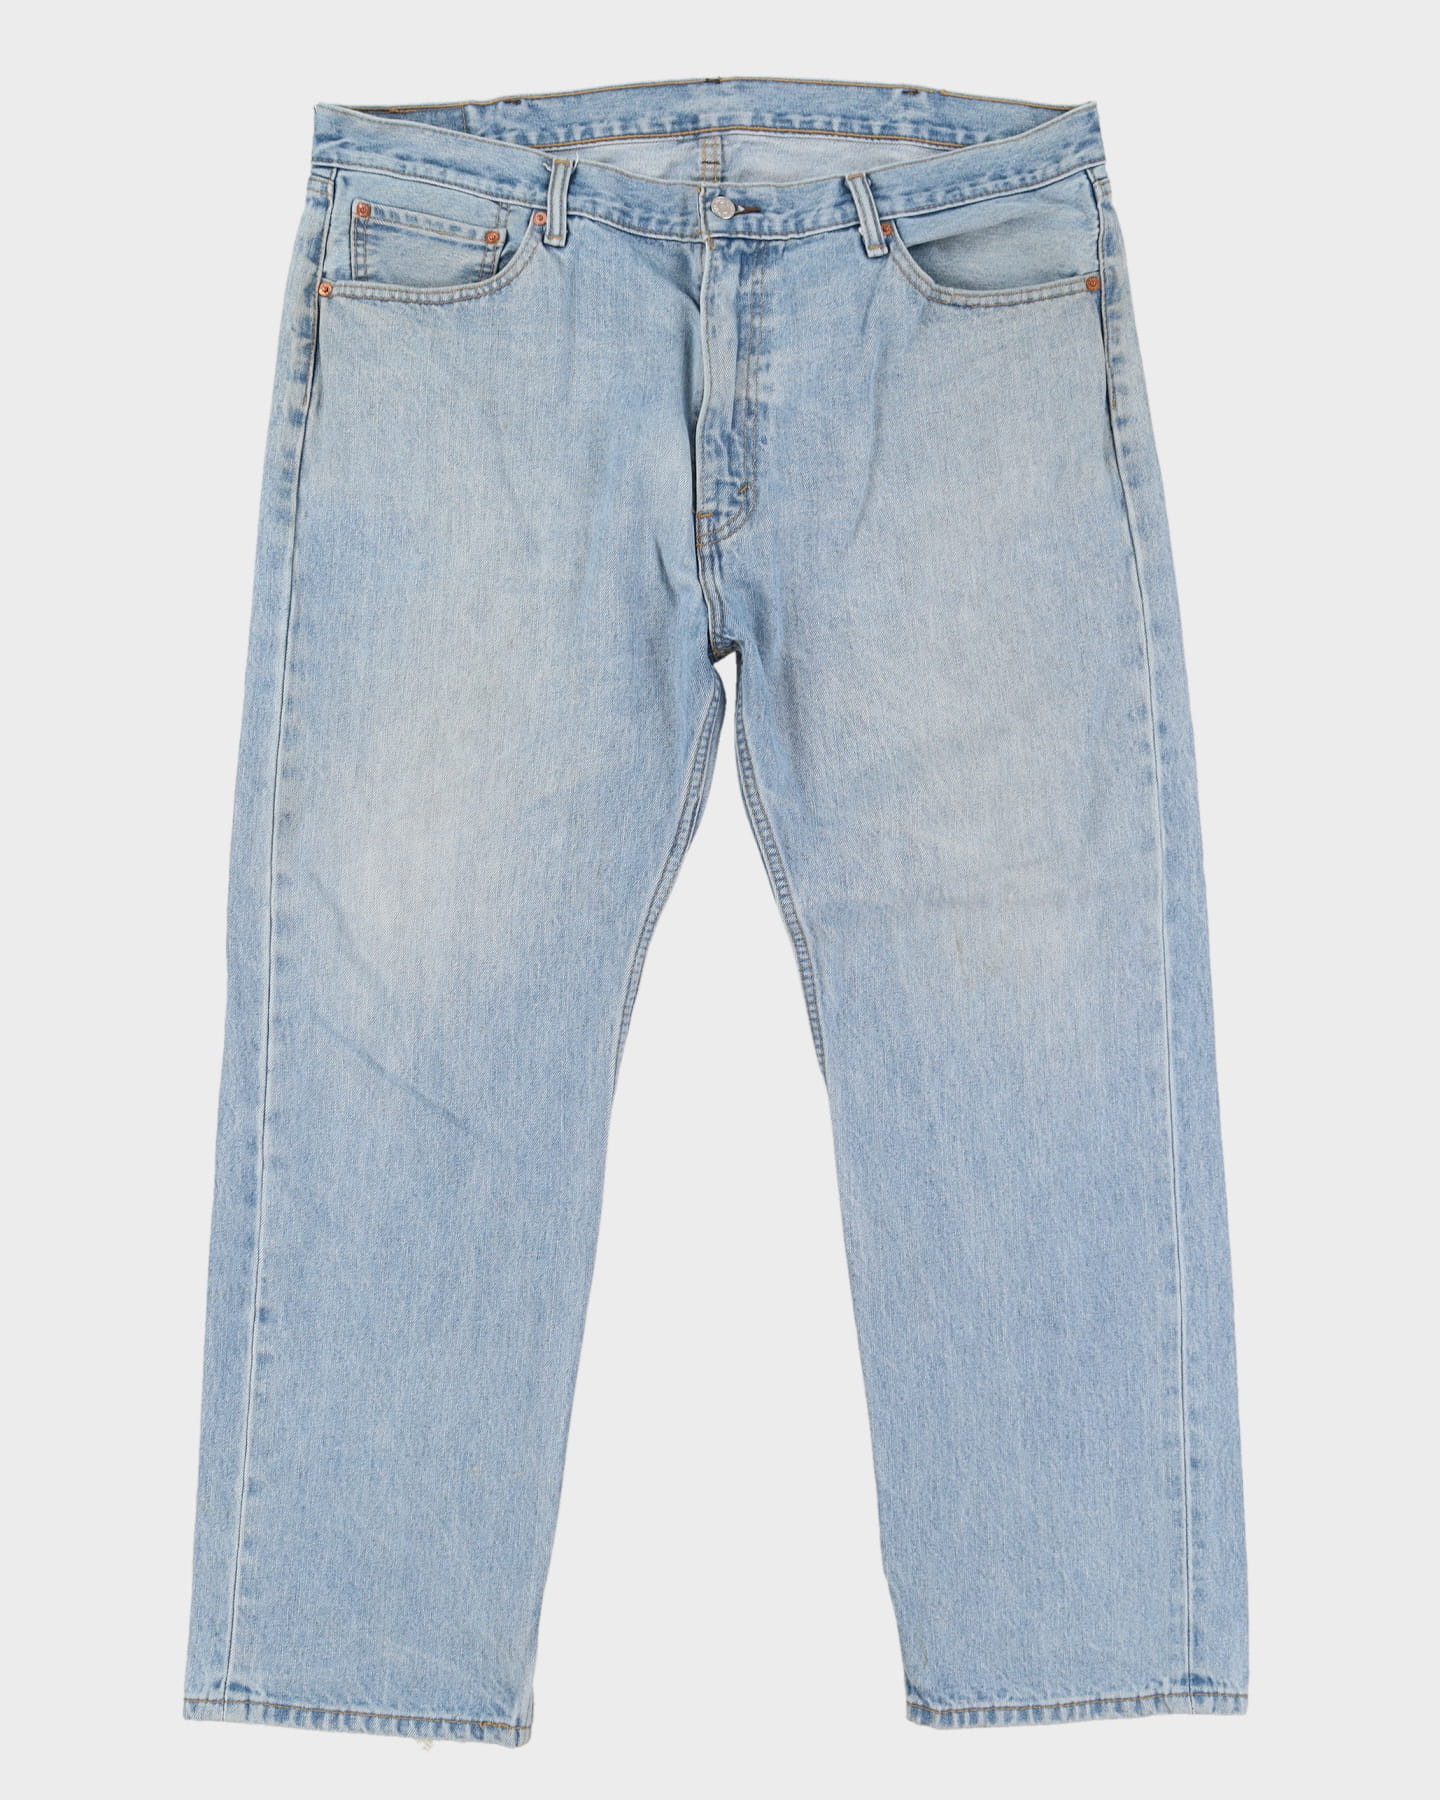 Levi's 505 Blue Jeans - W42 L30